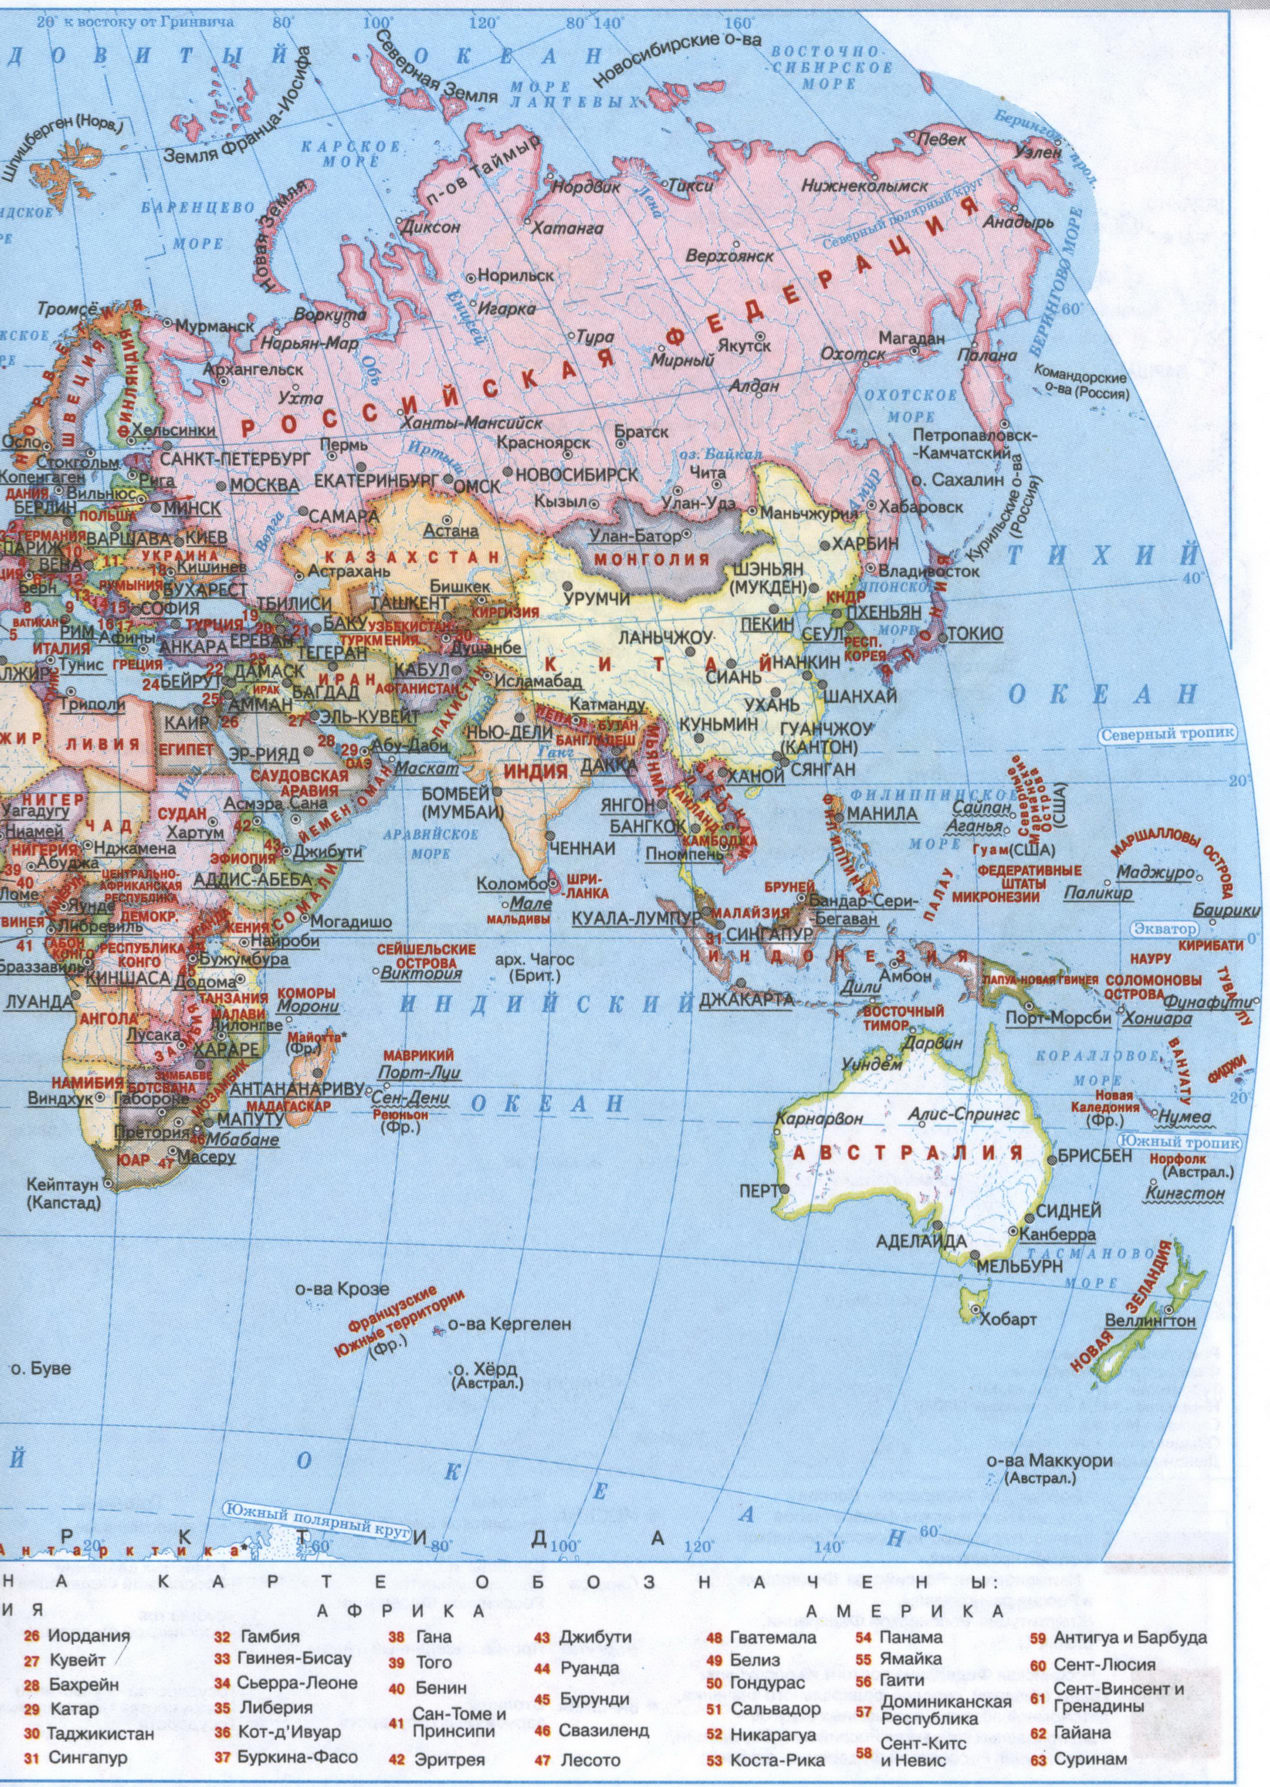 Восточное полушарие - политическая карта мира на русском языке